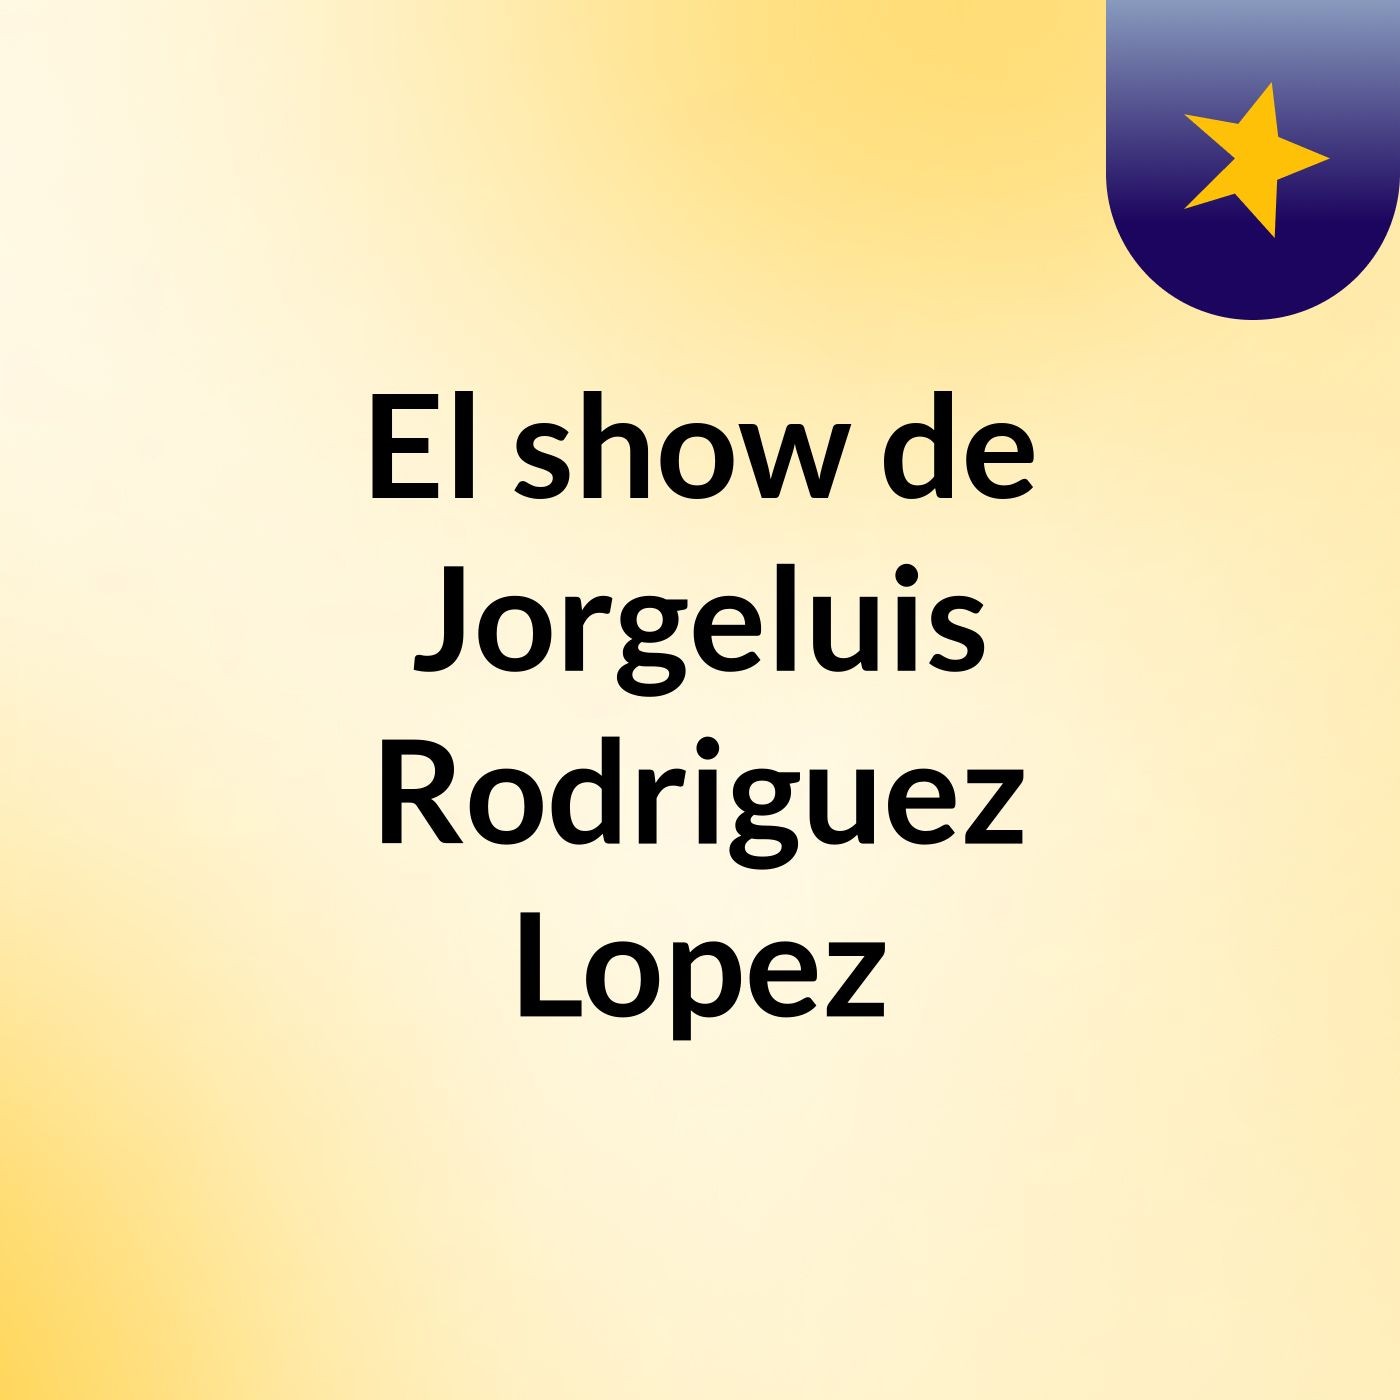 El show de Jorgeluis Rodriguez Lopez